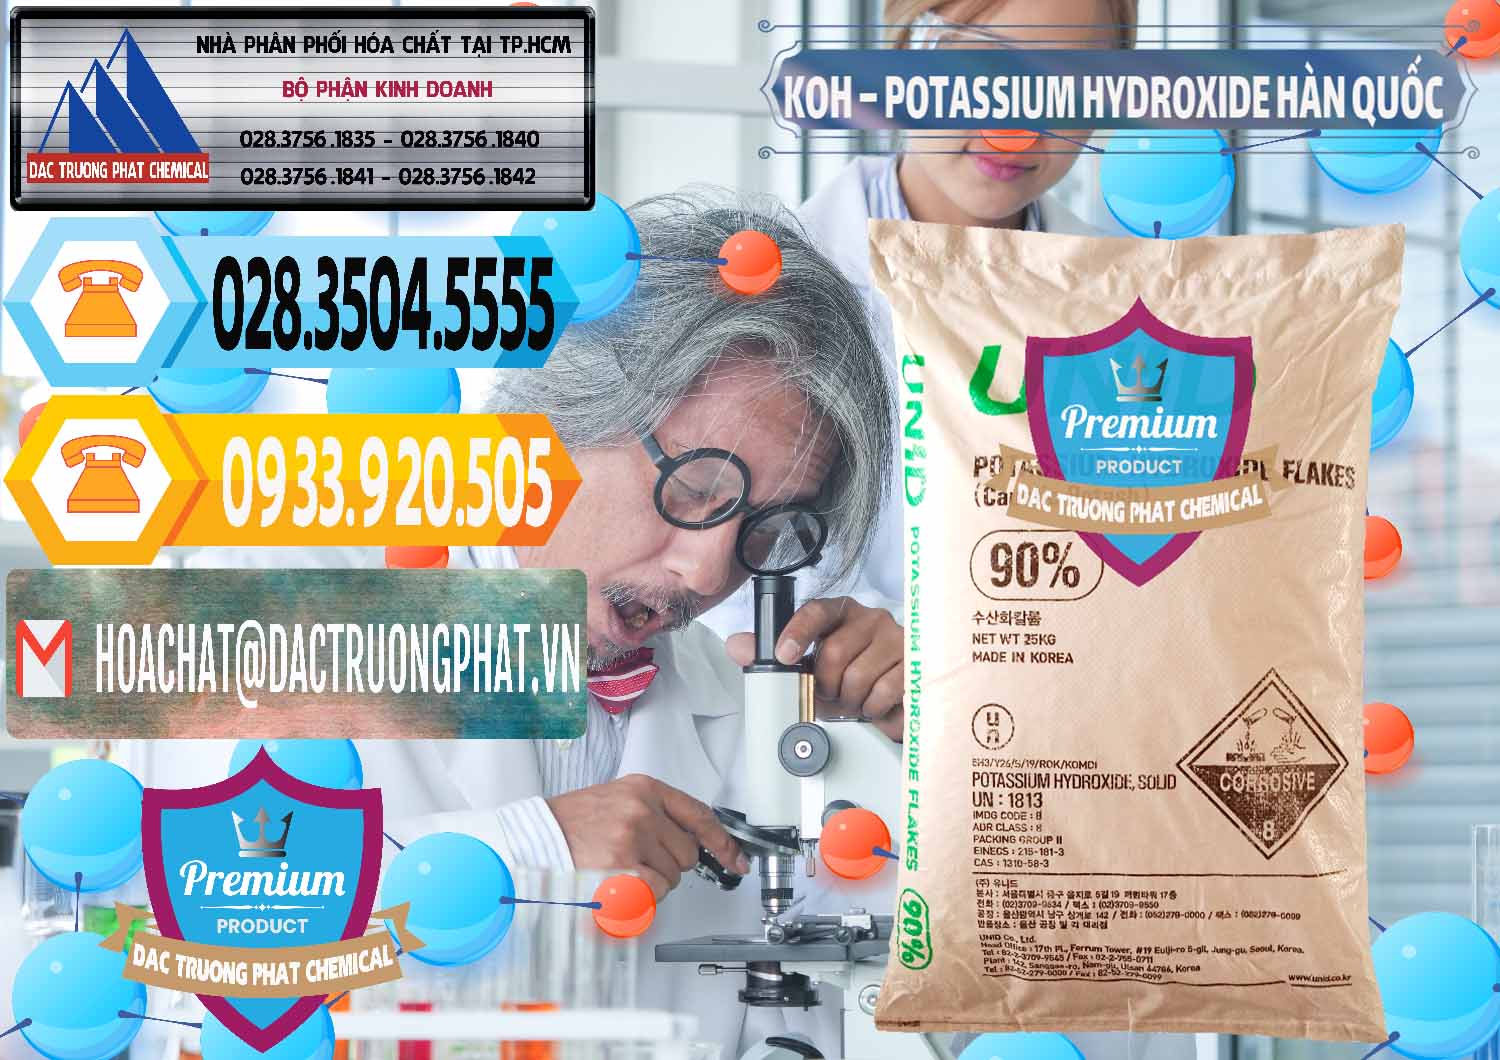 Đơn vị chuyên bán & phân phối KOH ( 90%) – Potassium Hydroxide Unid Hàn Quốc Korea - 0090 - Cty cung cấp _ bán hóa chất tại TP.HCM - hoachattayrua.net